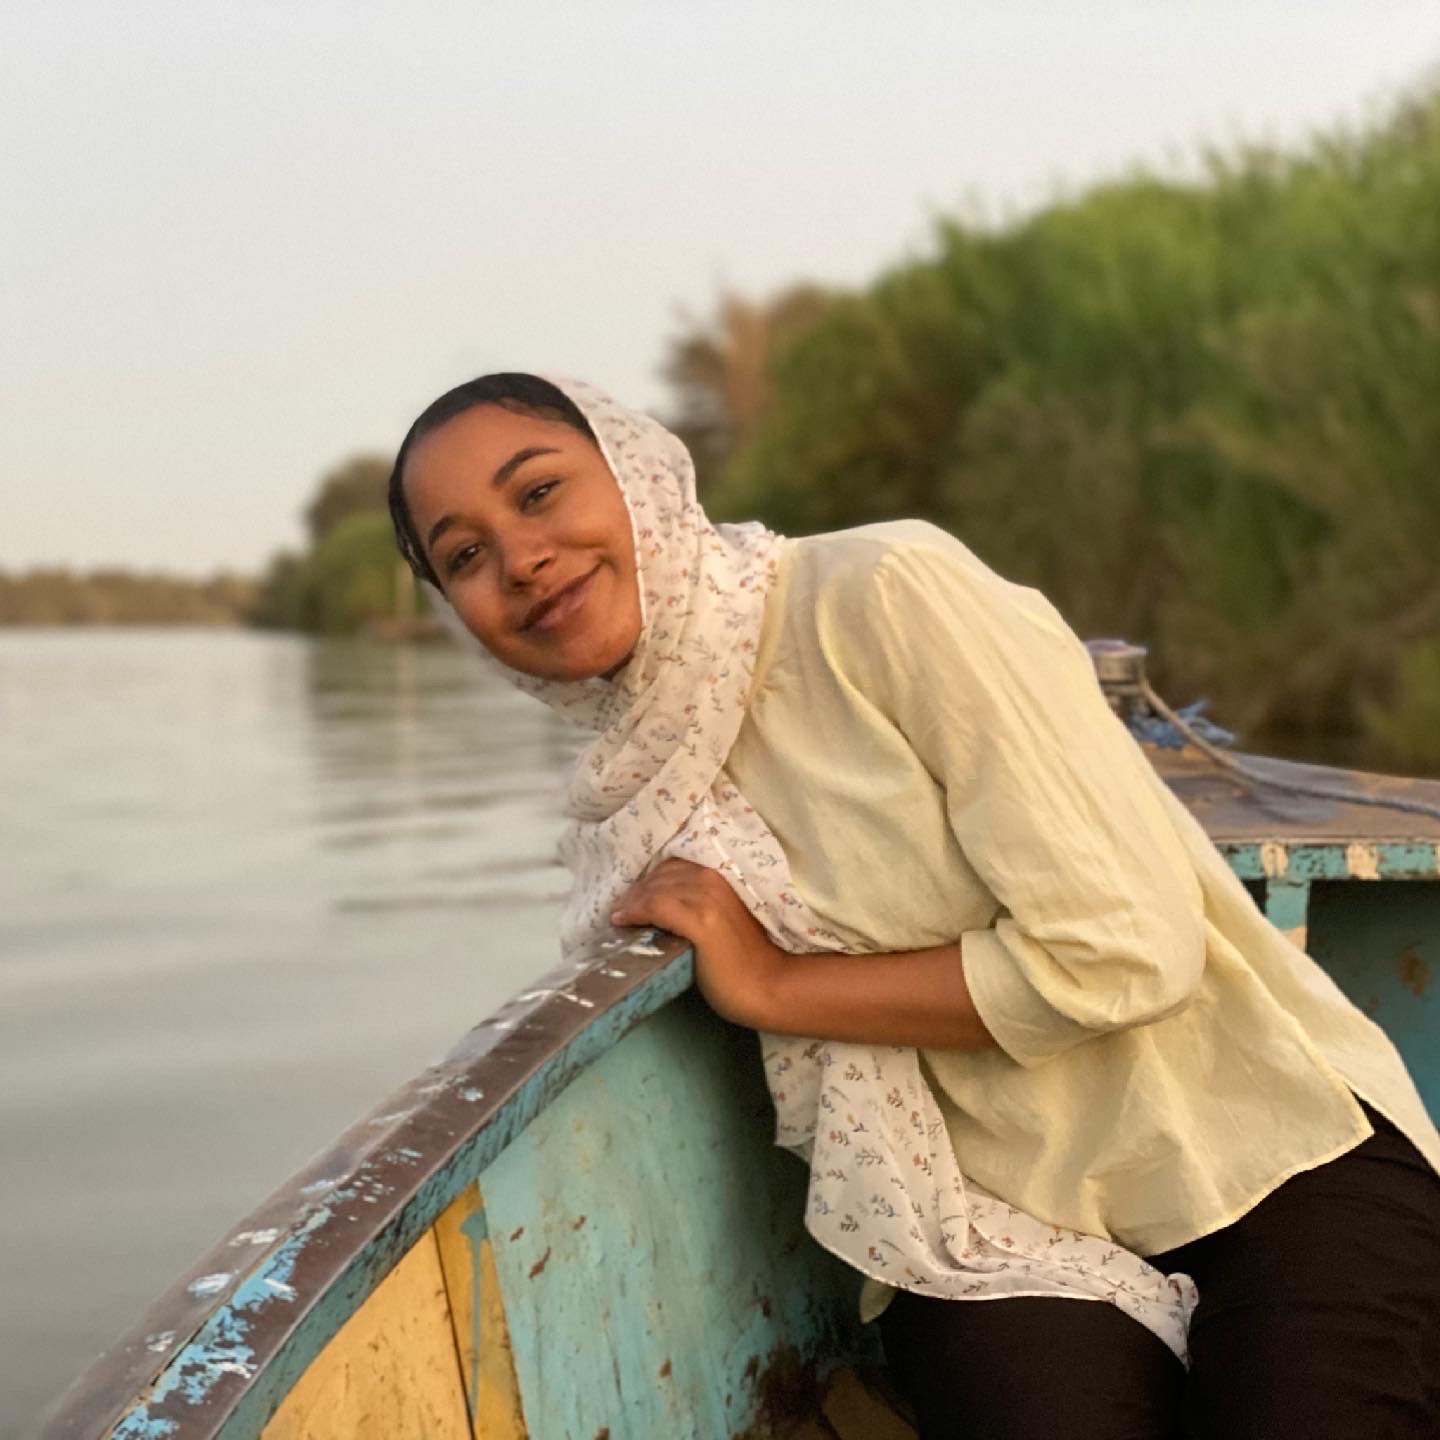 Bakhit on the Nile in Khartoum